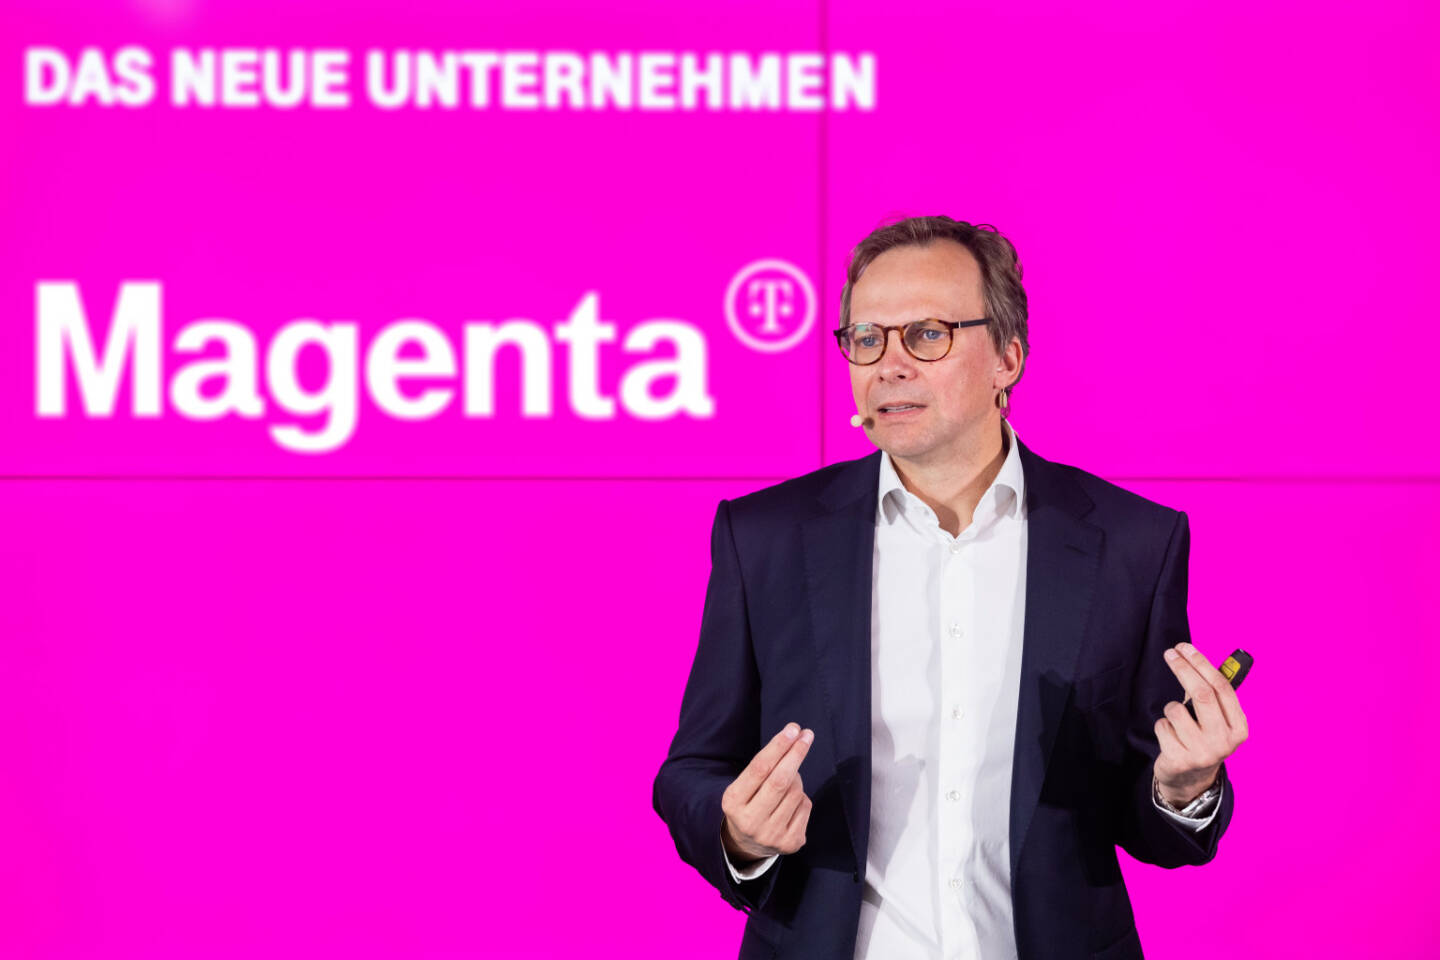 Mit 7. Mai 2019 gewinnt Österreich einen neuen starken, integrierten Anbieter für Telekommunikation und Fernsehen: Unter der neuen Marke „Magenta“ und dem künftigen Unternehmensnamen Magenta Telekom – Magenta T – werden ab sofort die gemeinsamen Produkte von T-Mobile Austria und UPC Austria unter dem neuen magentafarbenen Dach angeboten. Im Bild. Andreas Bierwirth, CEO Magenta Telekom; Credit: Magenta